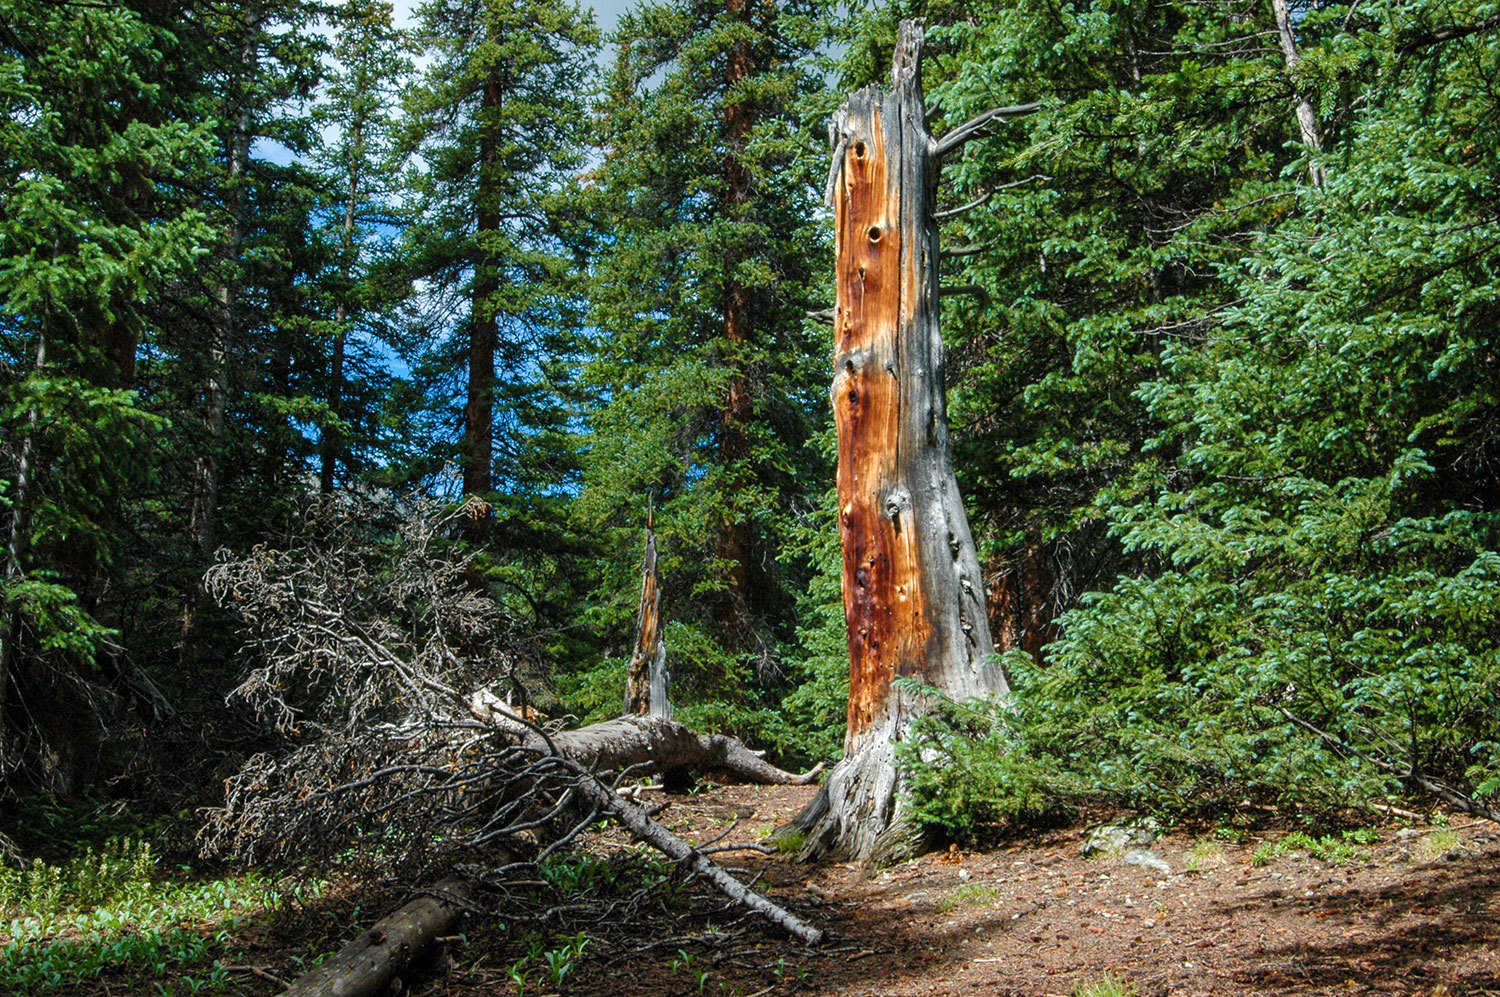 Snow Spruce Condos for sale in Breckenridge Colorado